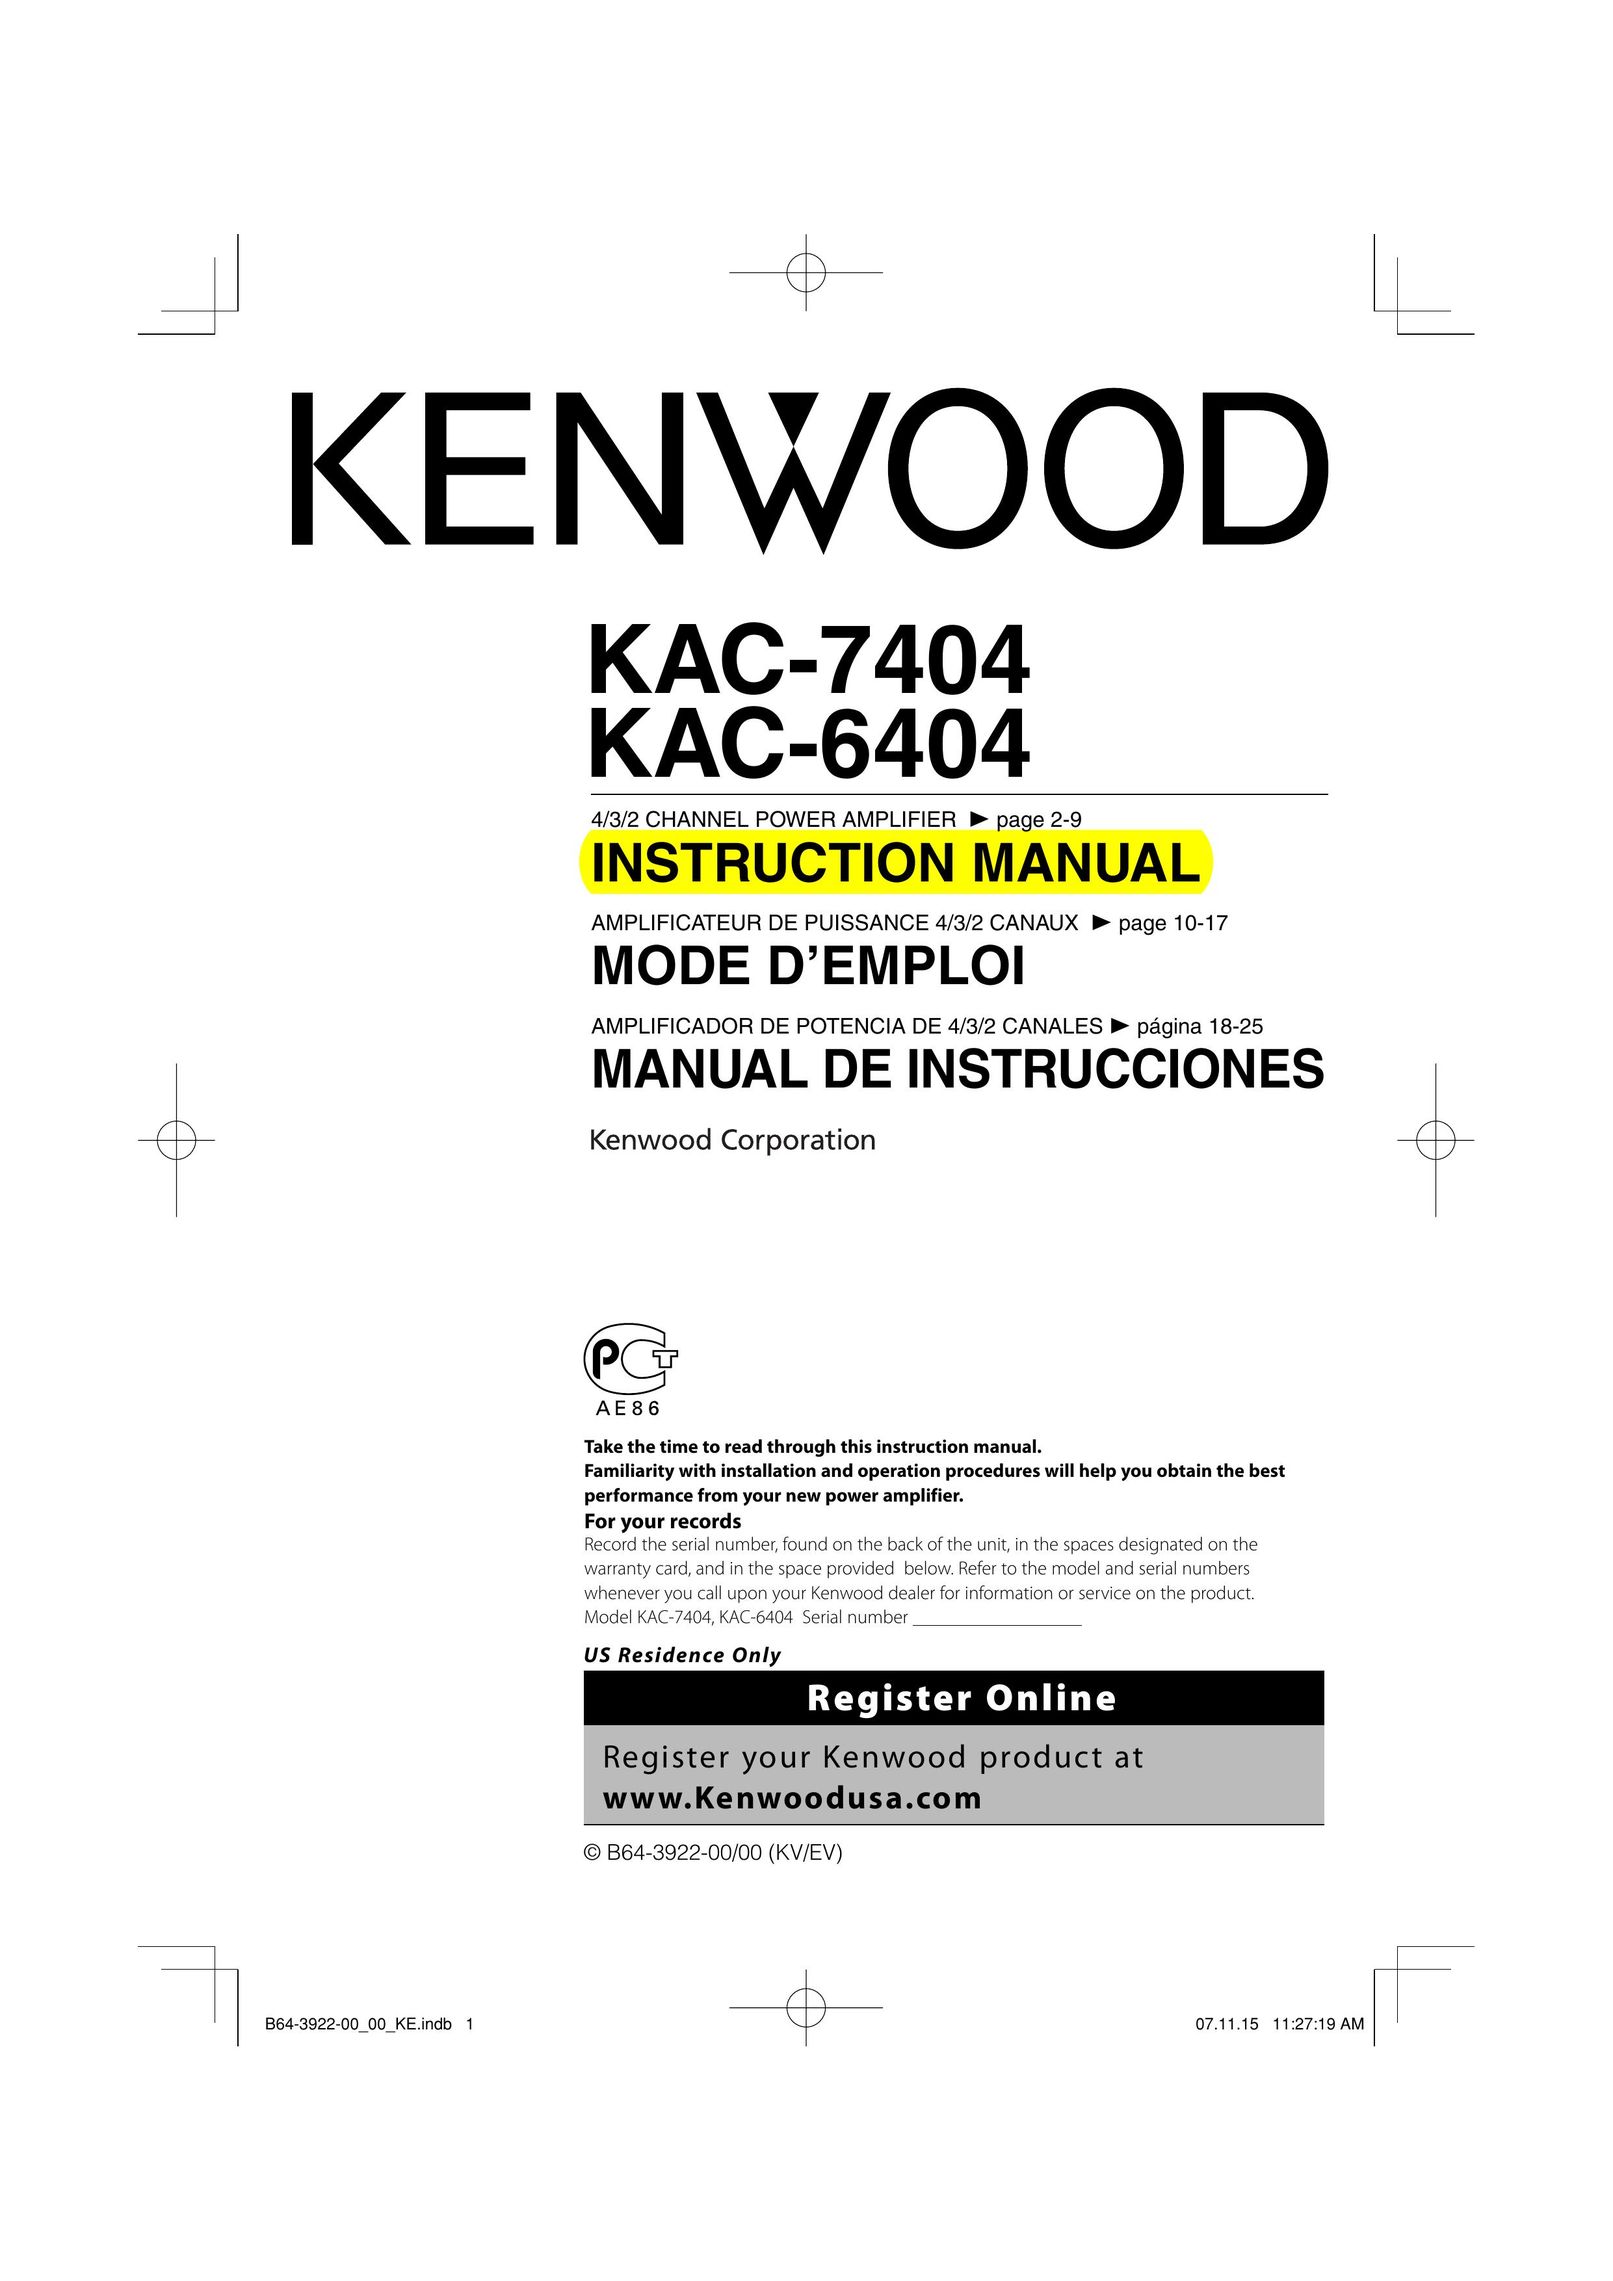 Kenwood KAC-7404 Stereo Amplifier User Manual